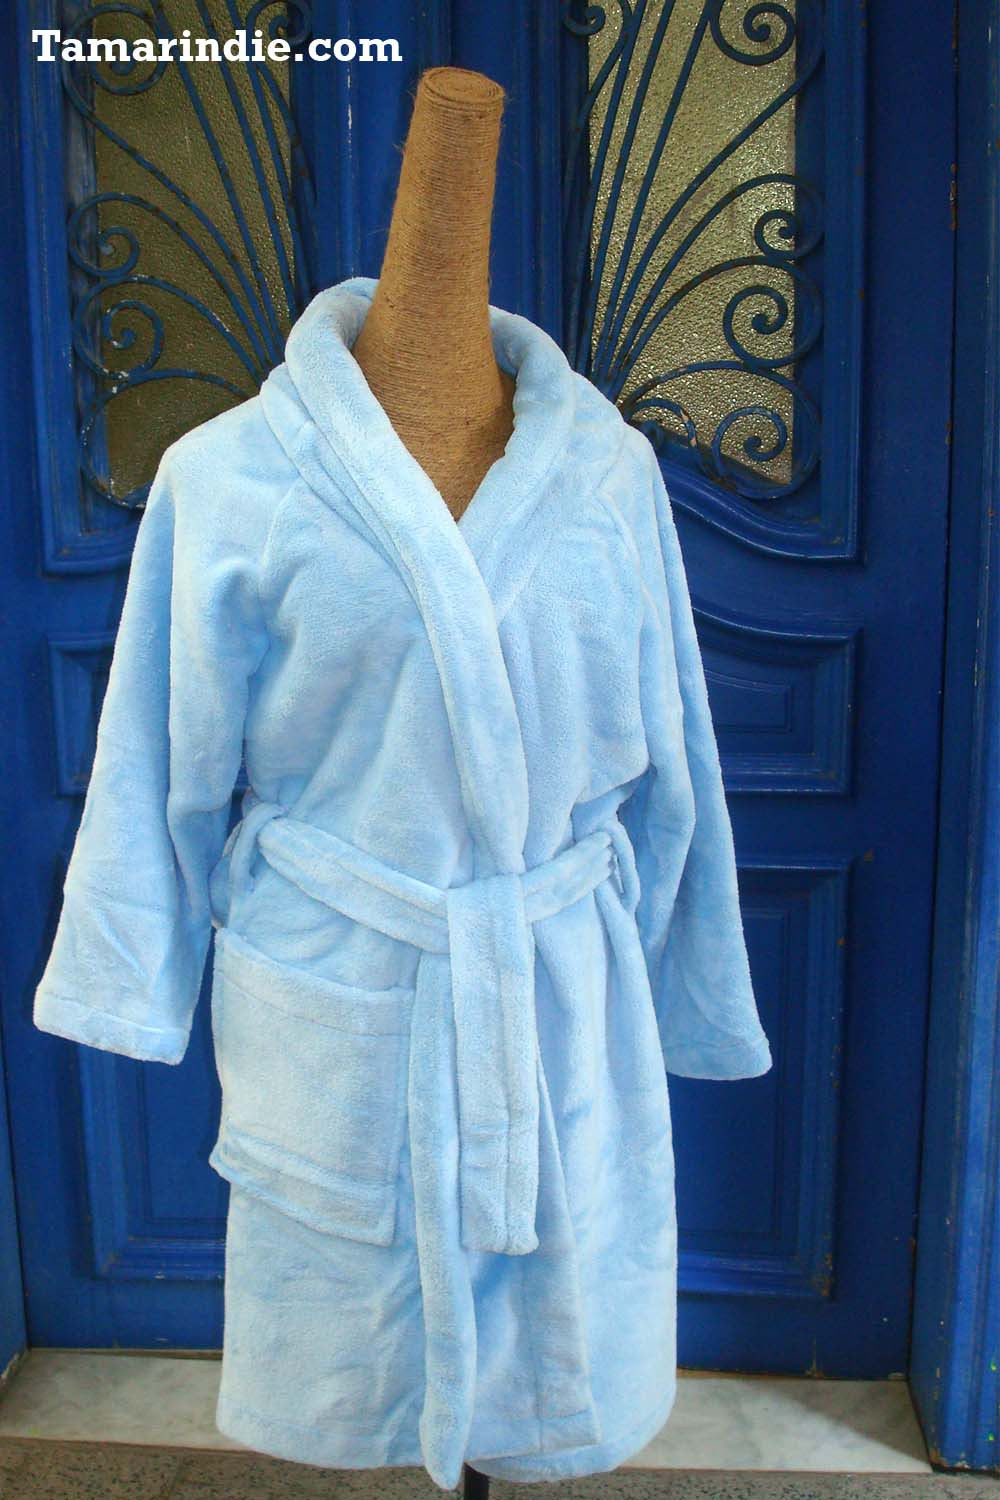 Light Blue Winter Robe|روب ازرق فاتح للشتاء